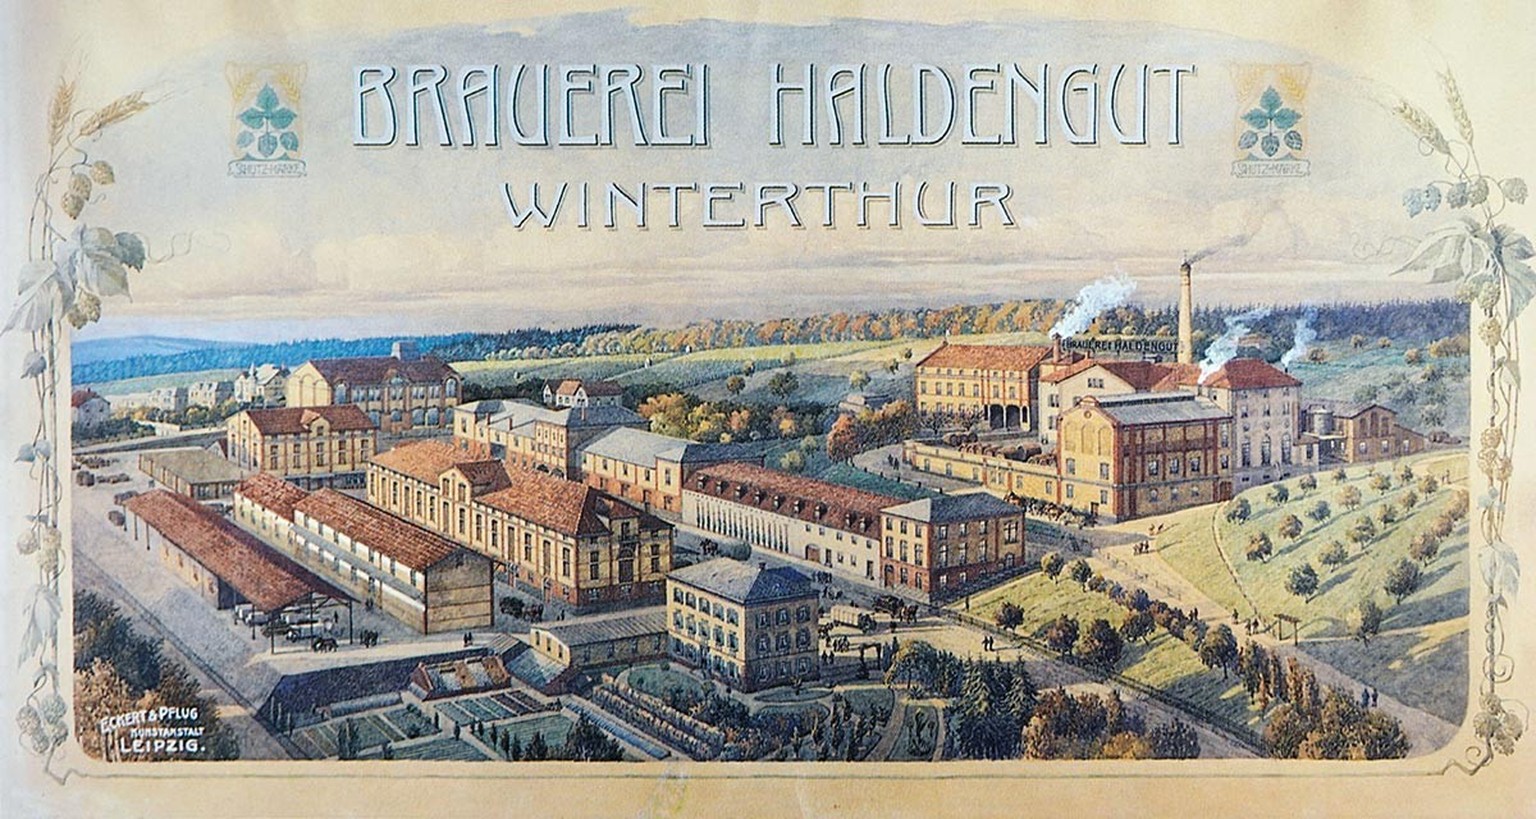 Gemälde einer Luftansicht der Brauerei Haldengut, um 1906.
https://commons.wikimedia.org/wiki/File:1906_Haldengut_Luftansicht_gemalt_3.jpg